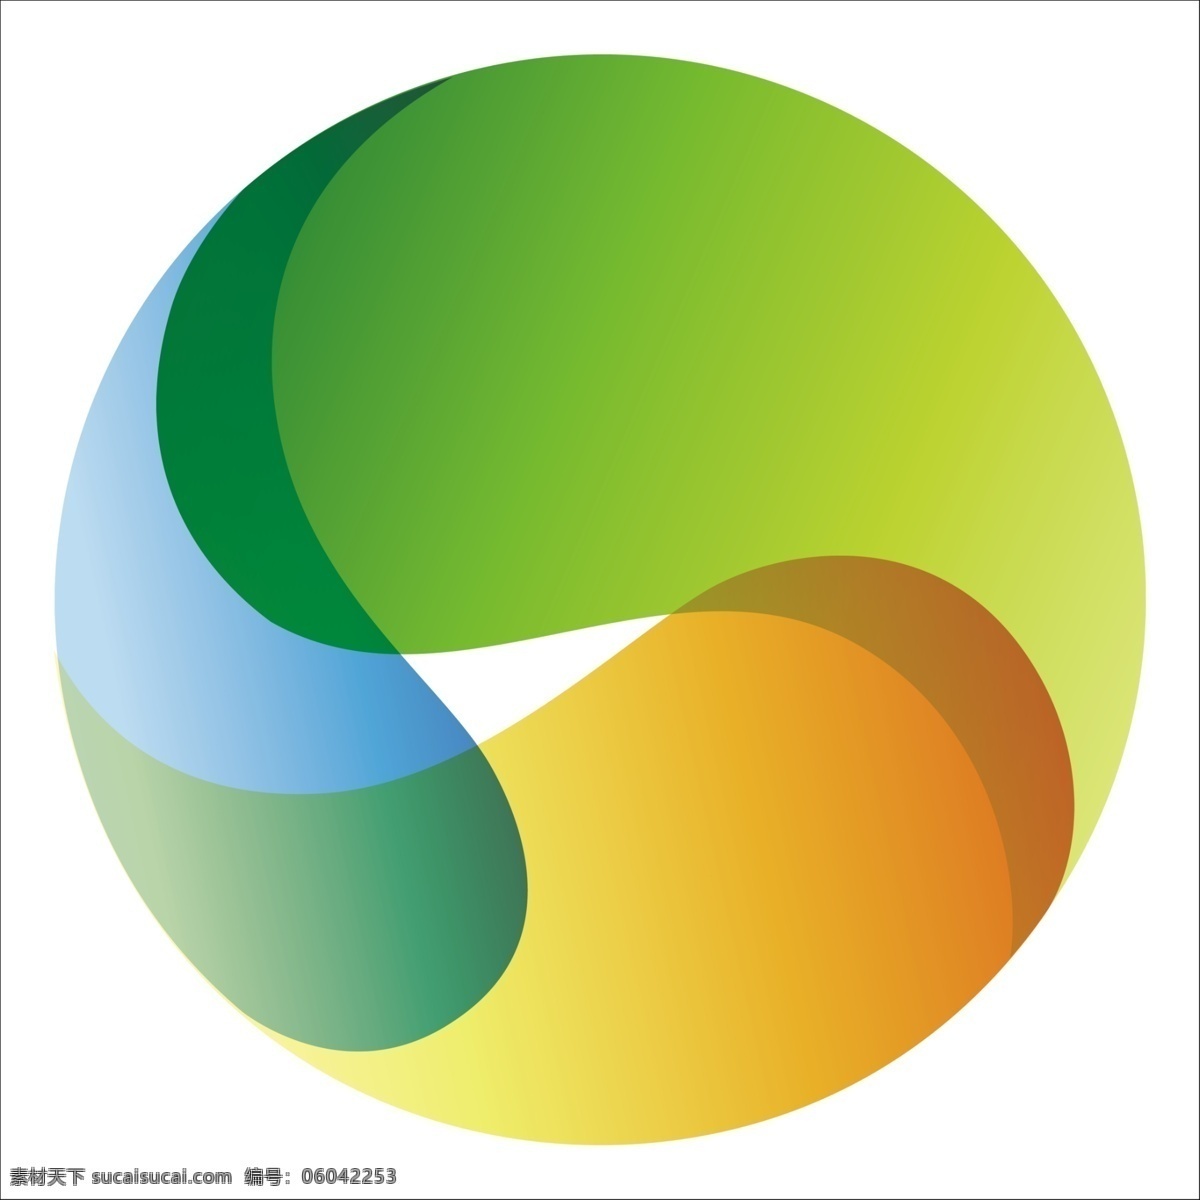 国泰 米业 logo 标志设计 广告设计模板 源文件 国泰米业 psd源文件 logo设计